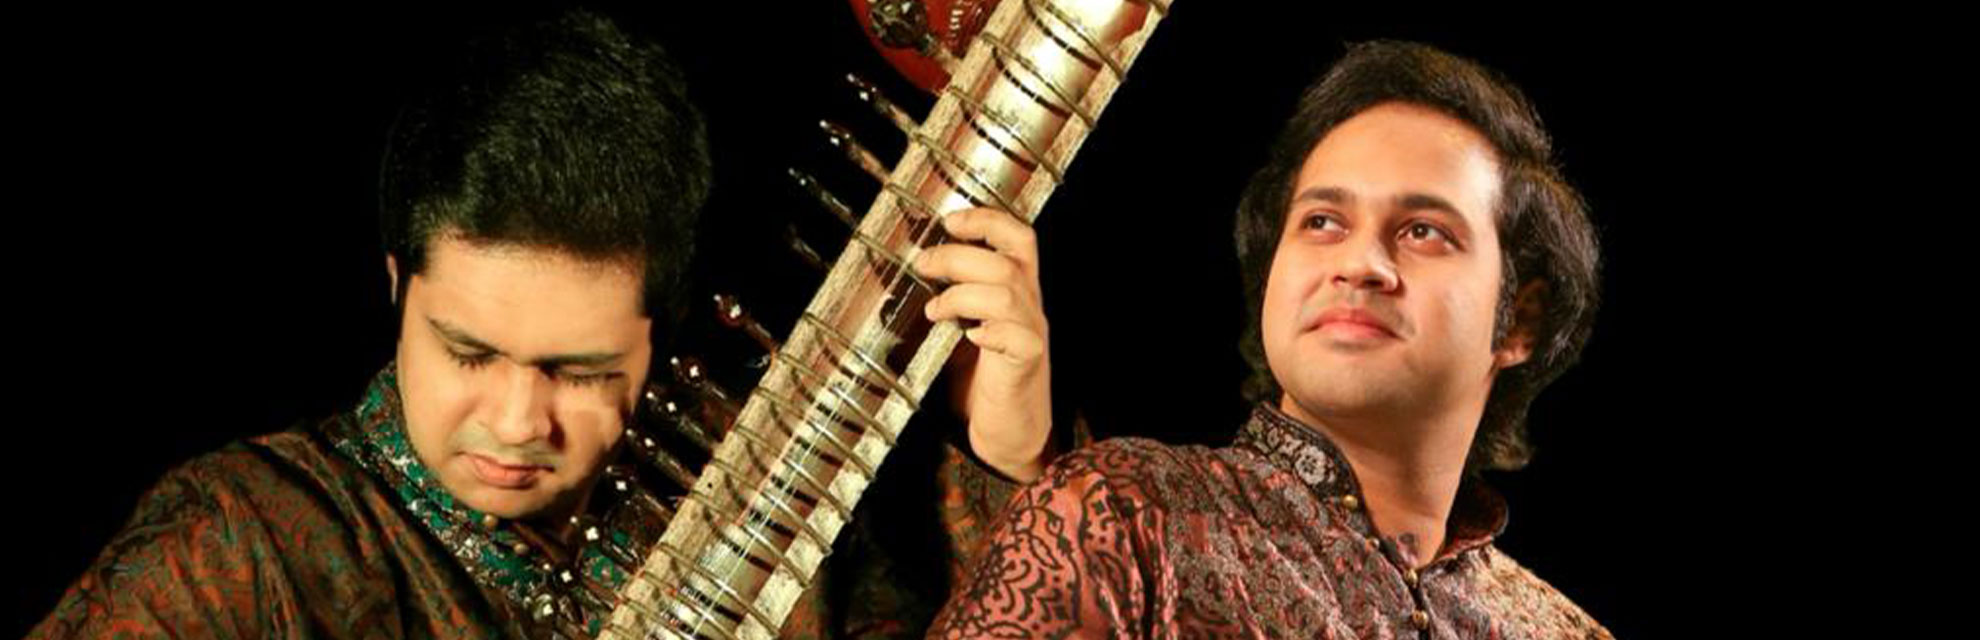 Глобальный джугалбанди: братья Мохан несут хиндустанскую музыку миру